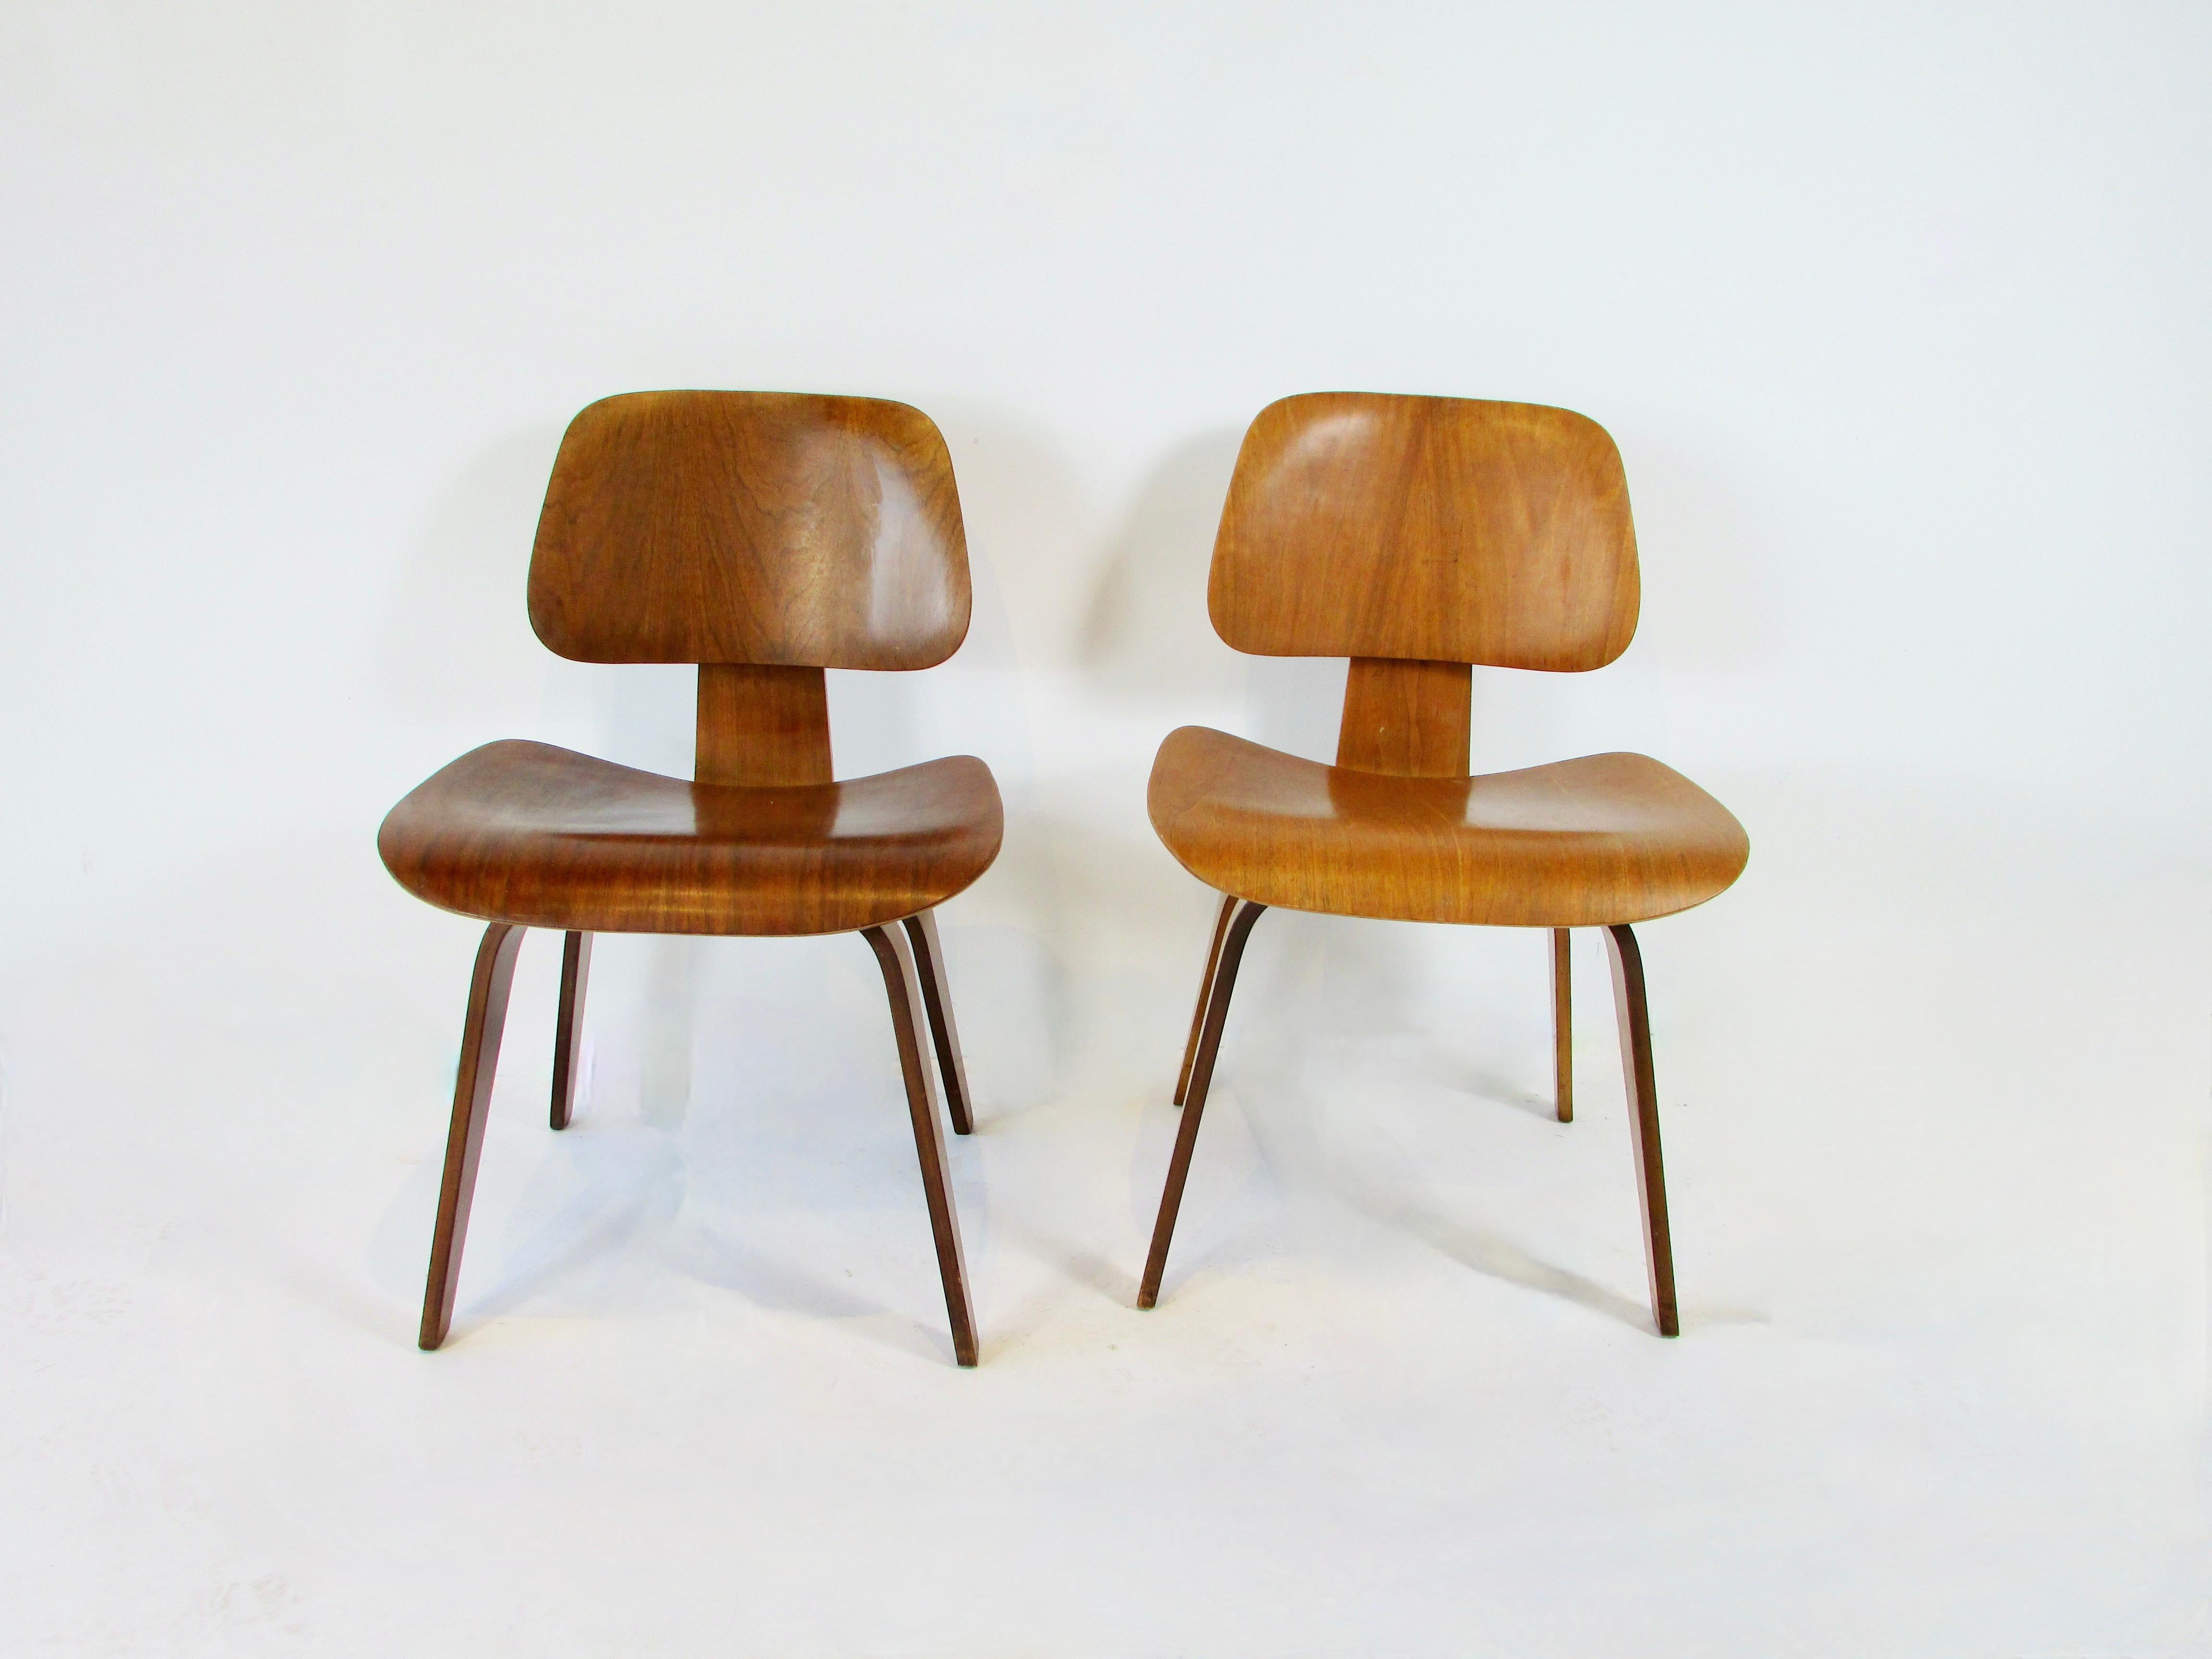 Deux chaises Herman Miller DCW (dining chair wood). Du studio de design Charles et Ray Eames . Les deux chaises sont en finition noyer. Ils sont vendus à l'unité. La finition d'origine usée est fraîche comme un sou neuf. 